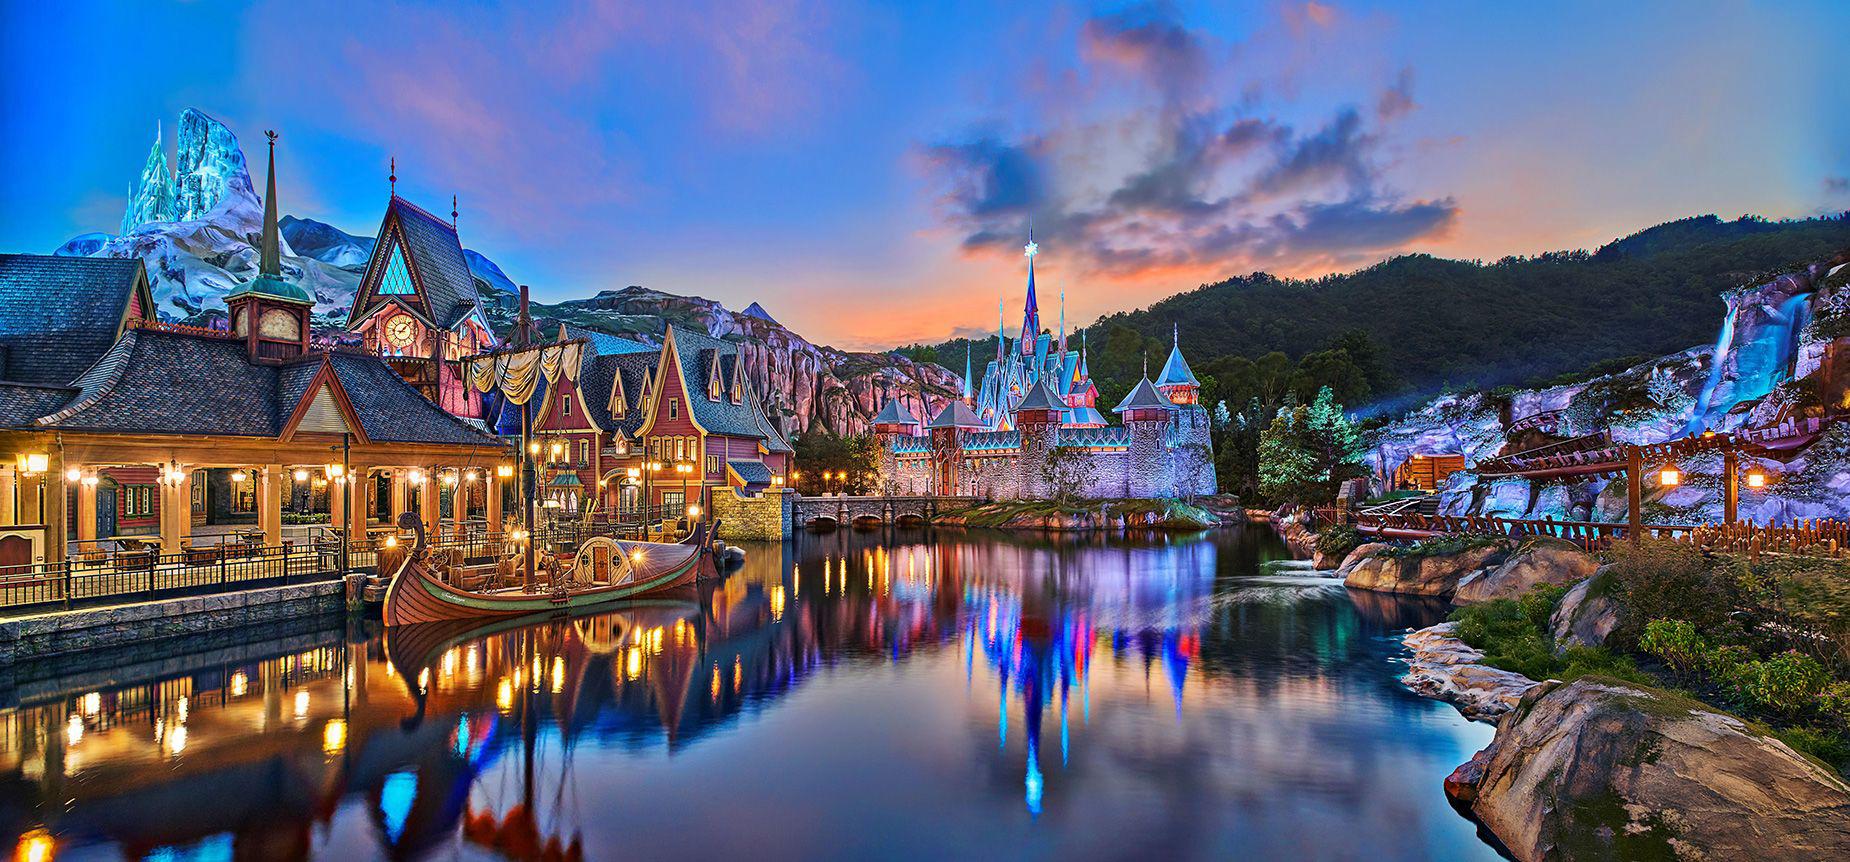 Disneyland Hồng Kông ra mắt công viên chủ đề phim Frozen đẹp như cổ tích